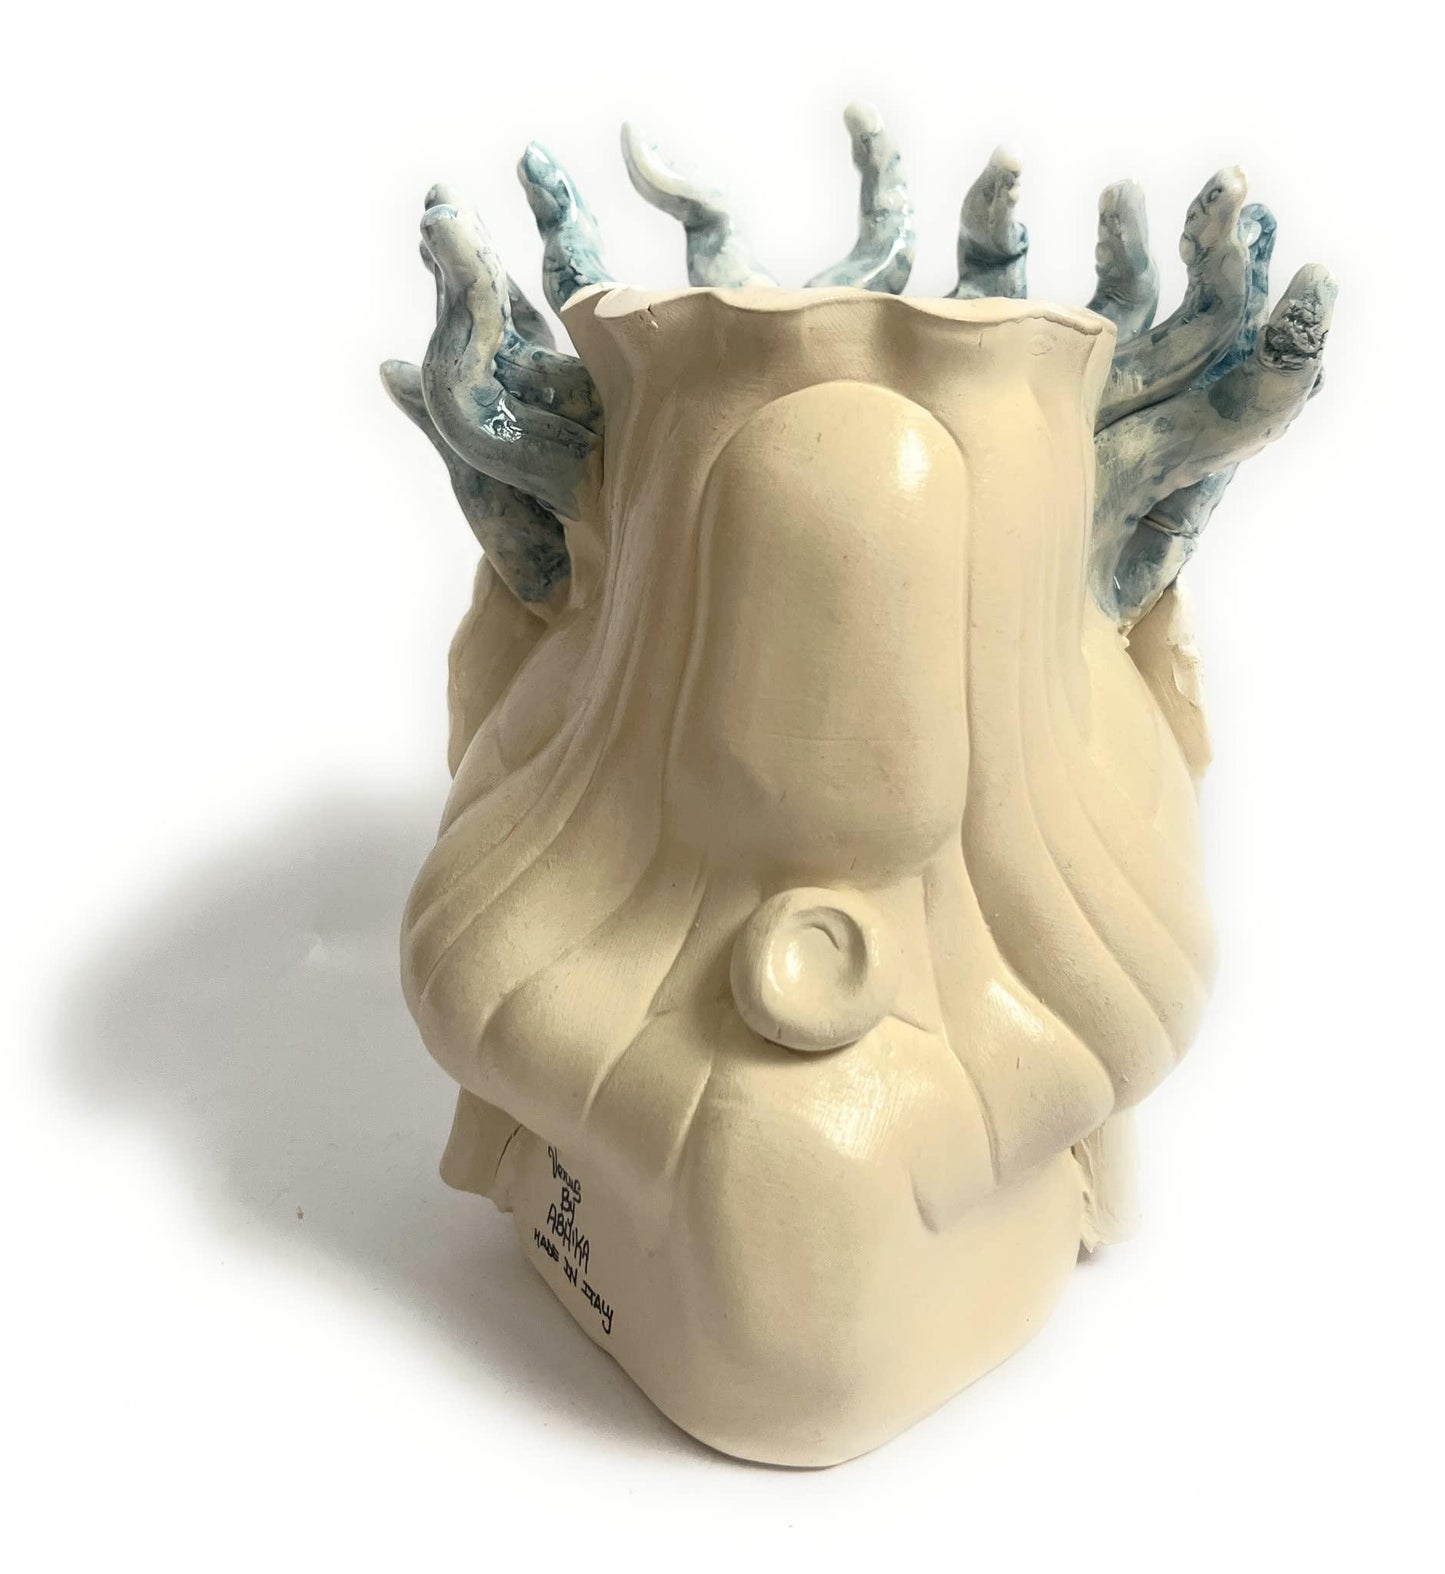 Vaso Moro Small Medusa Uomo, designed by Abhika, ceramiche fatte a mano 100% made in Italy - MARIKA DE PAOLA - HOME DECOR